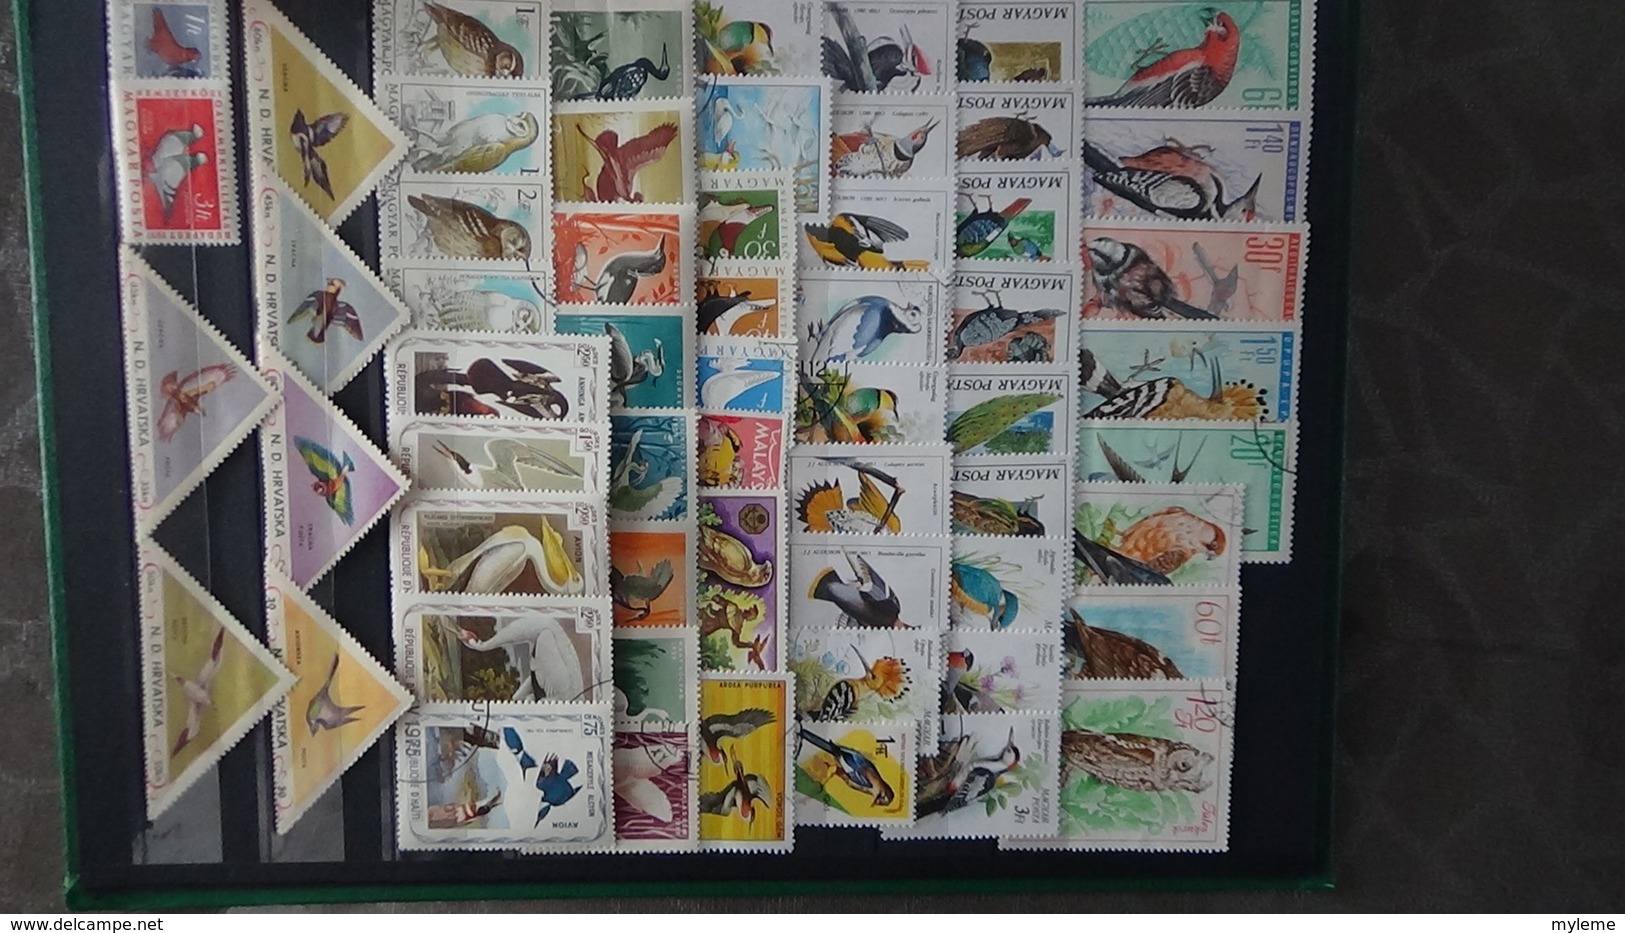 Belle thématiques sur les oiseaux . Plusieurs dizaines de timbres et 33 photos !!!